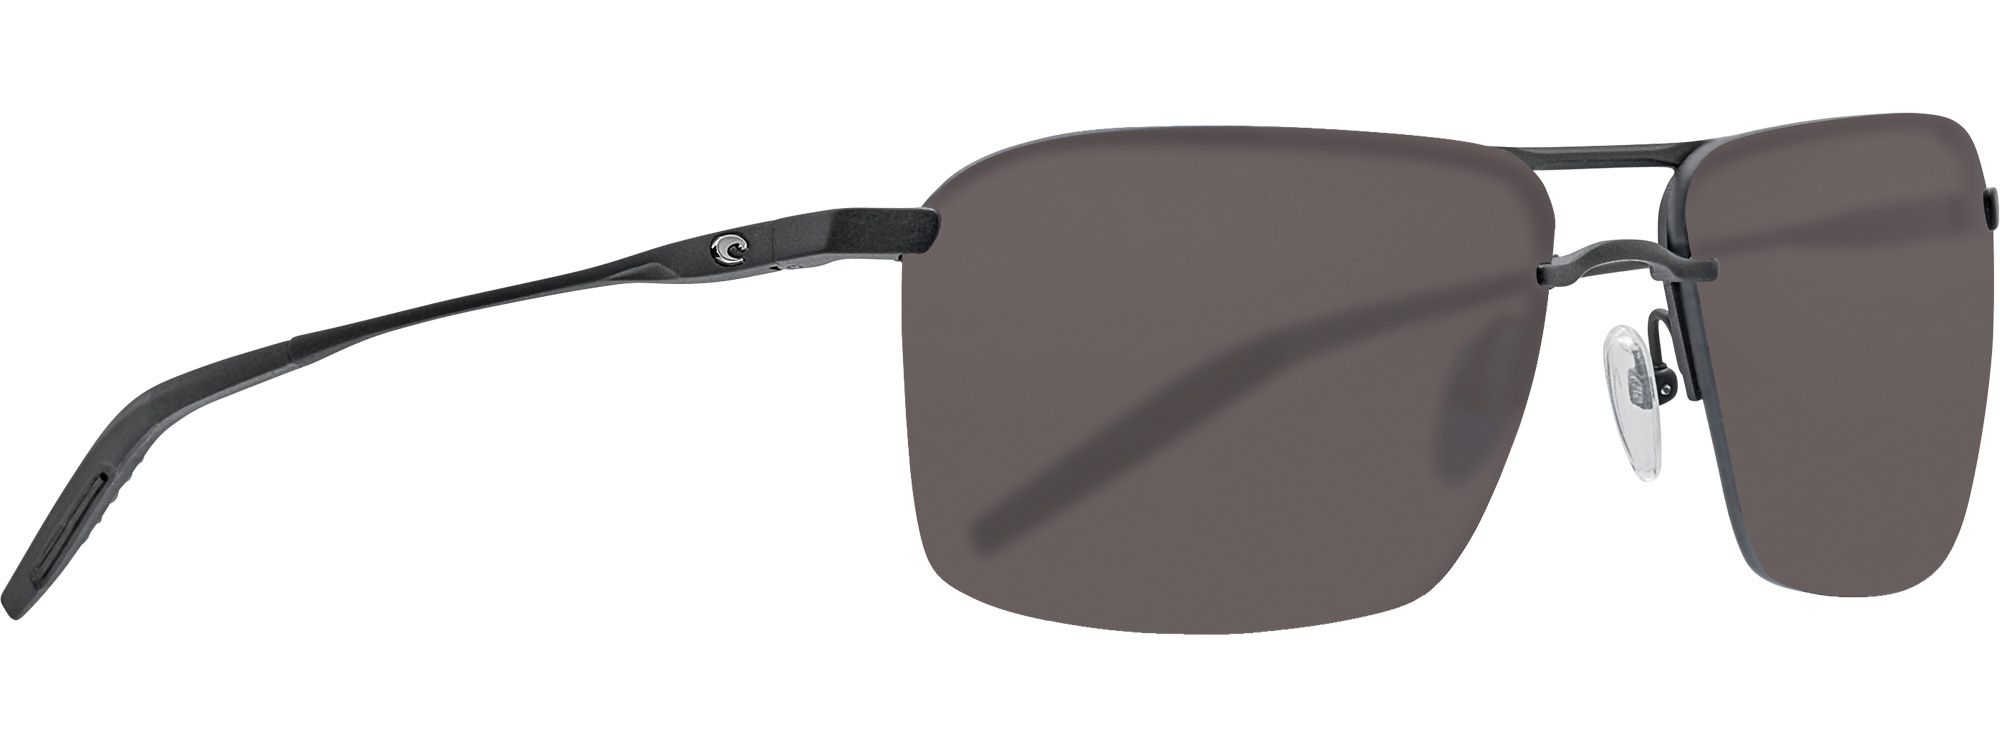 Photos - Sunglasses Costa Del Mar Skimmer 580P Polarized , Men's, Matte Black/Gray | 